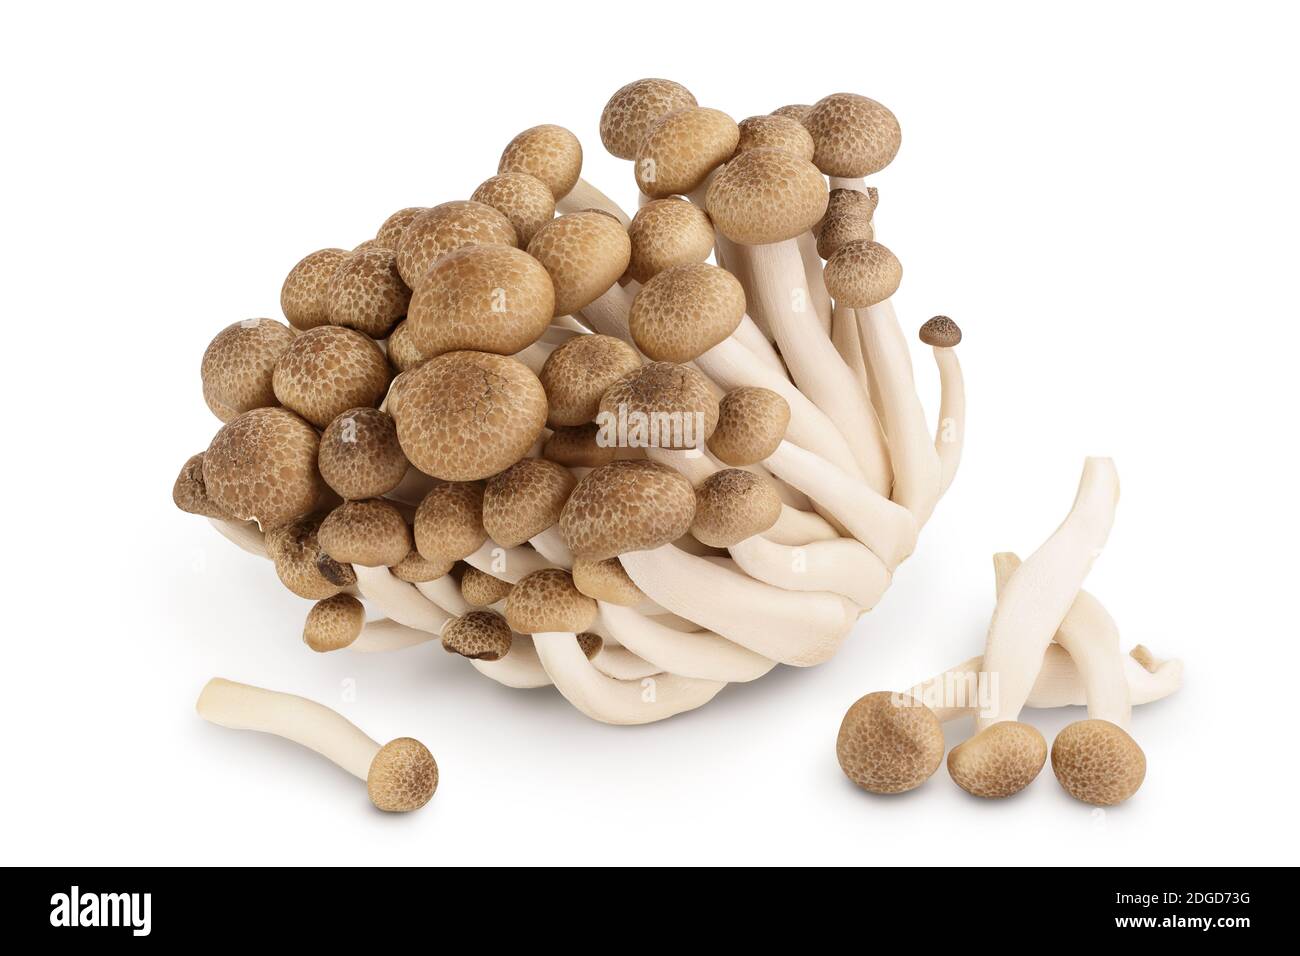 Funghi di faggio marroni o funghi Shimeji isolati su sfondo bianco con percorso di ritaglio e profondità di campo completa. Foto Stock